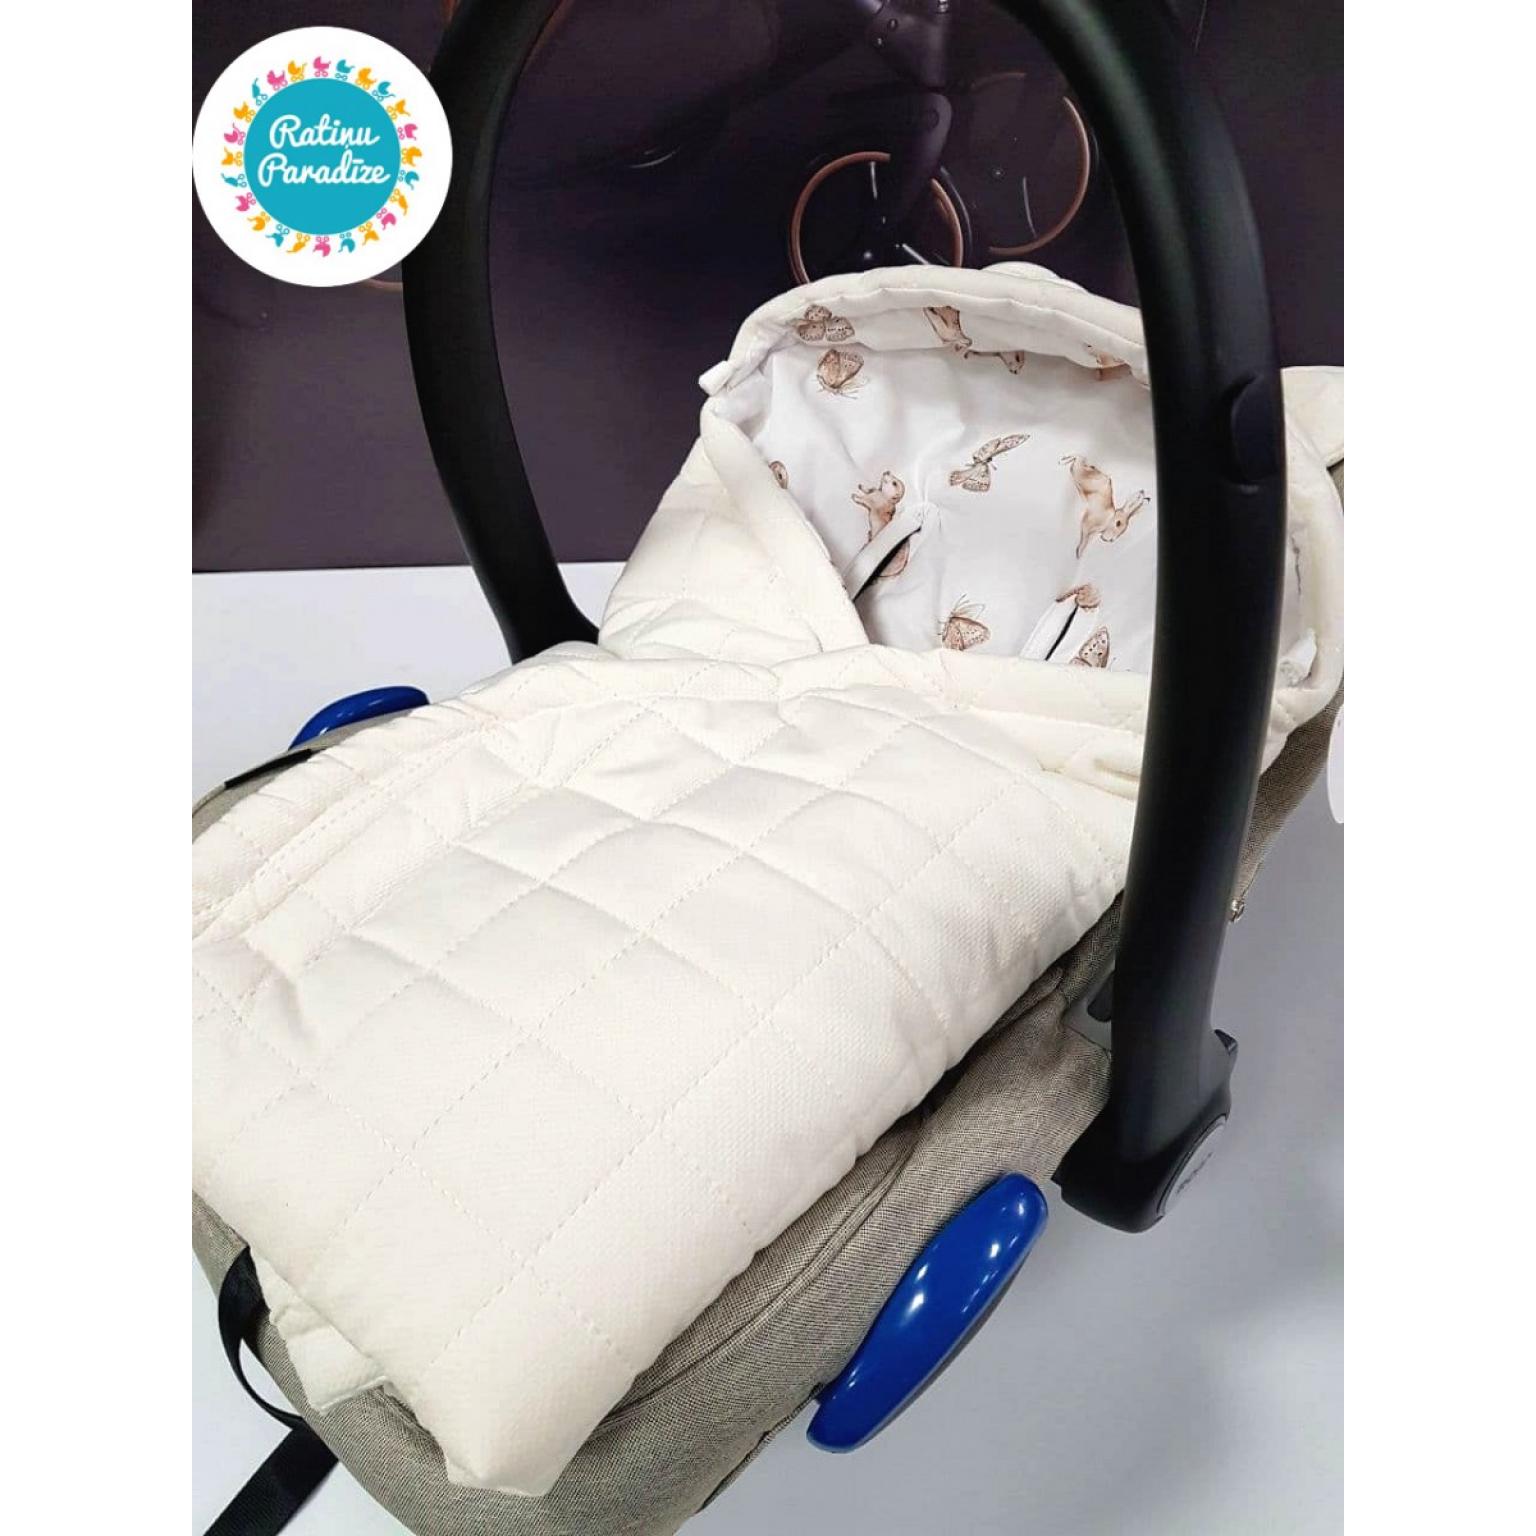 Sedziņa-konverts autokrēsliņām Babysteps — Dreamland — ecru (9)